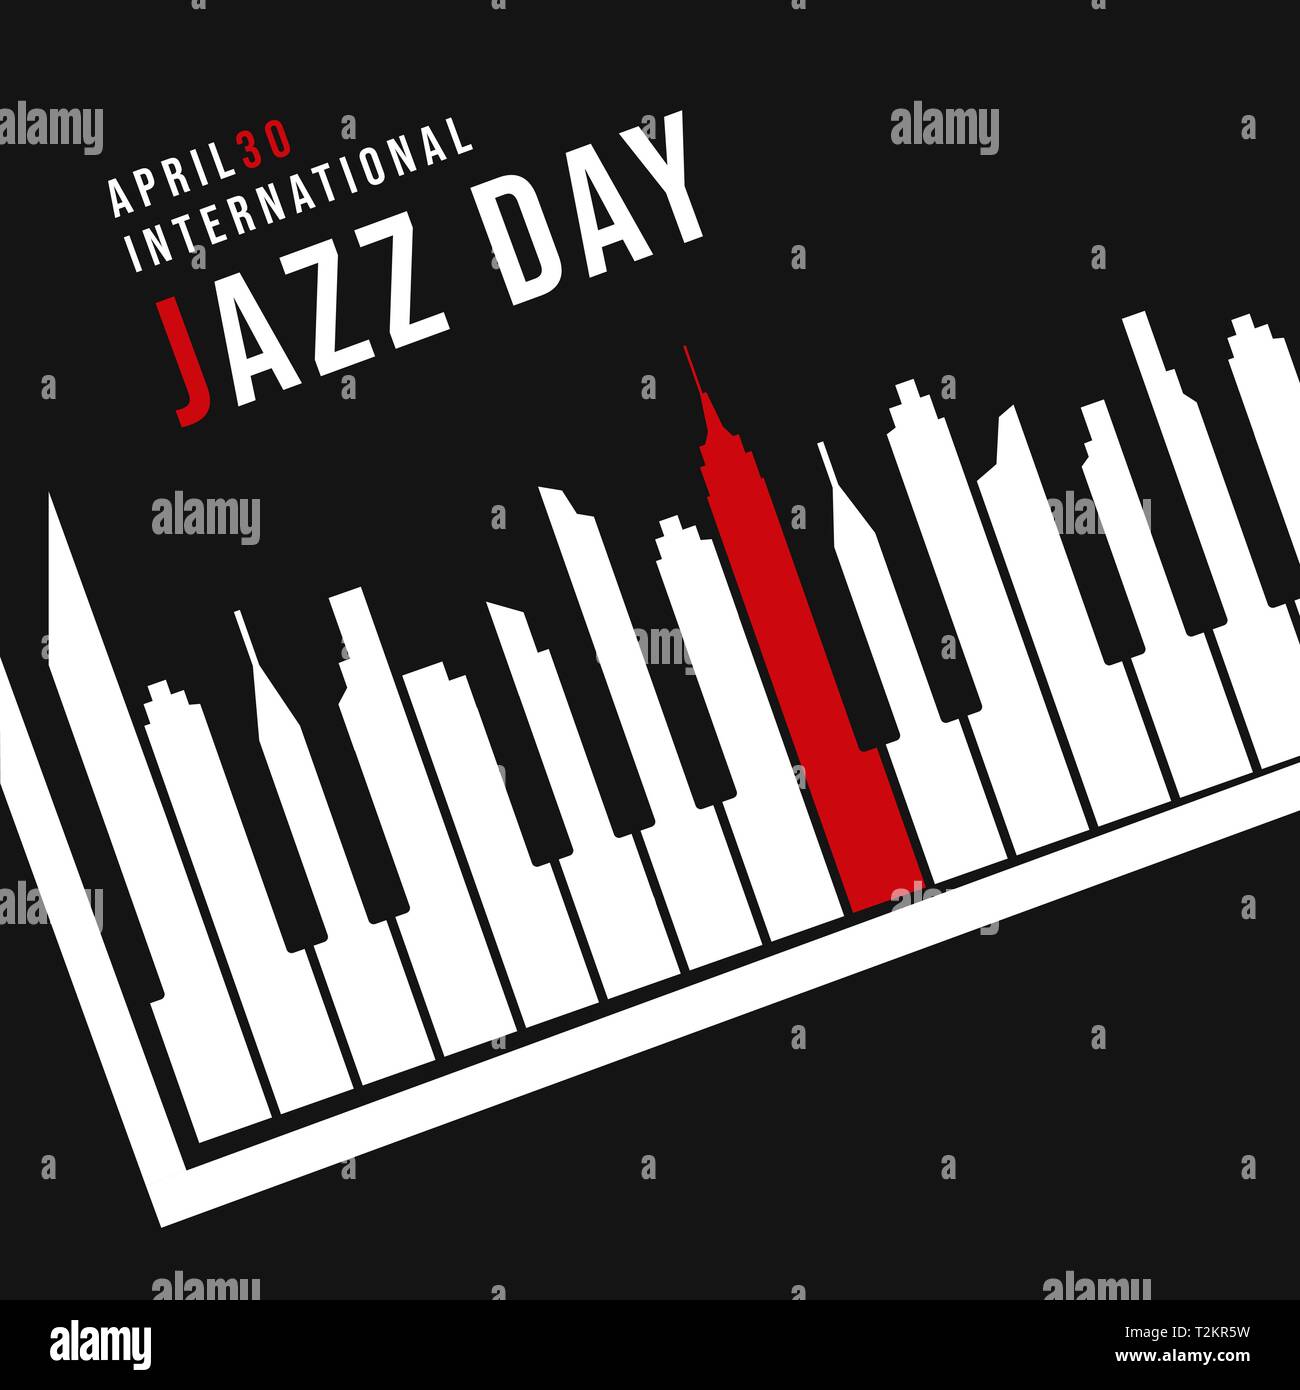 Día Internacional de Jazz ilustración del concepto para la celebración de eventos musicales. Teclas del piano como silueta del horizonte de la ciudad por la noche. Ilustración del Vector